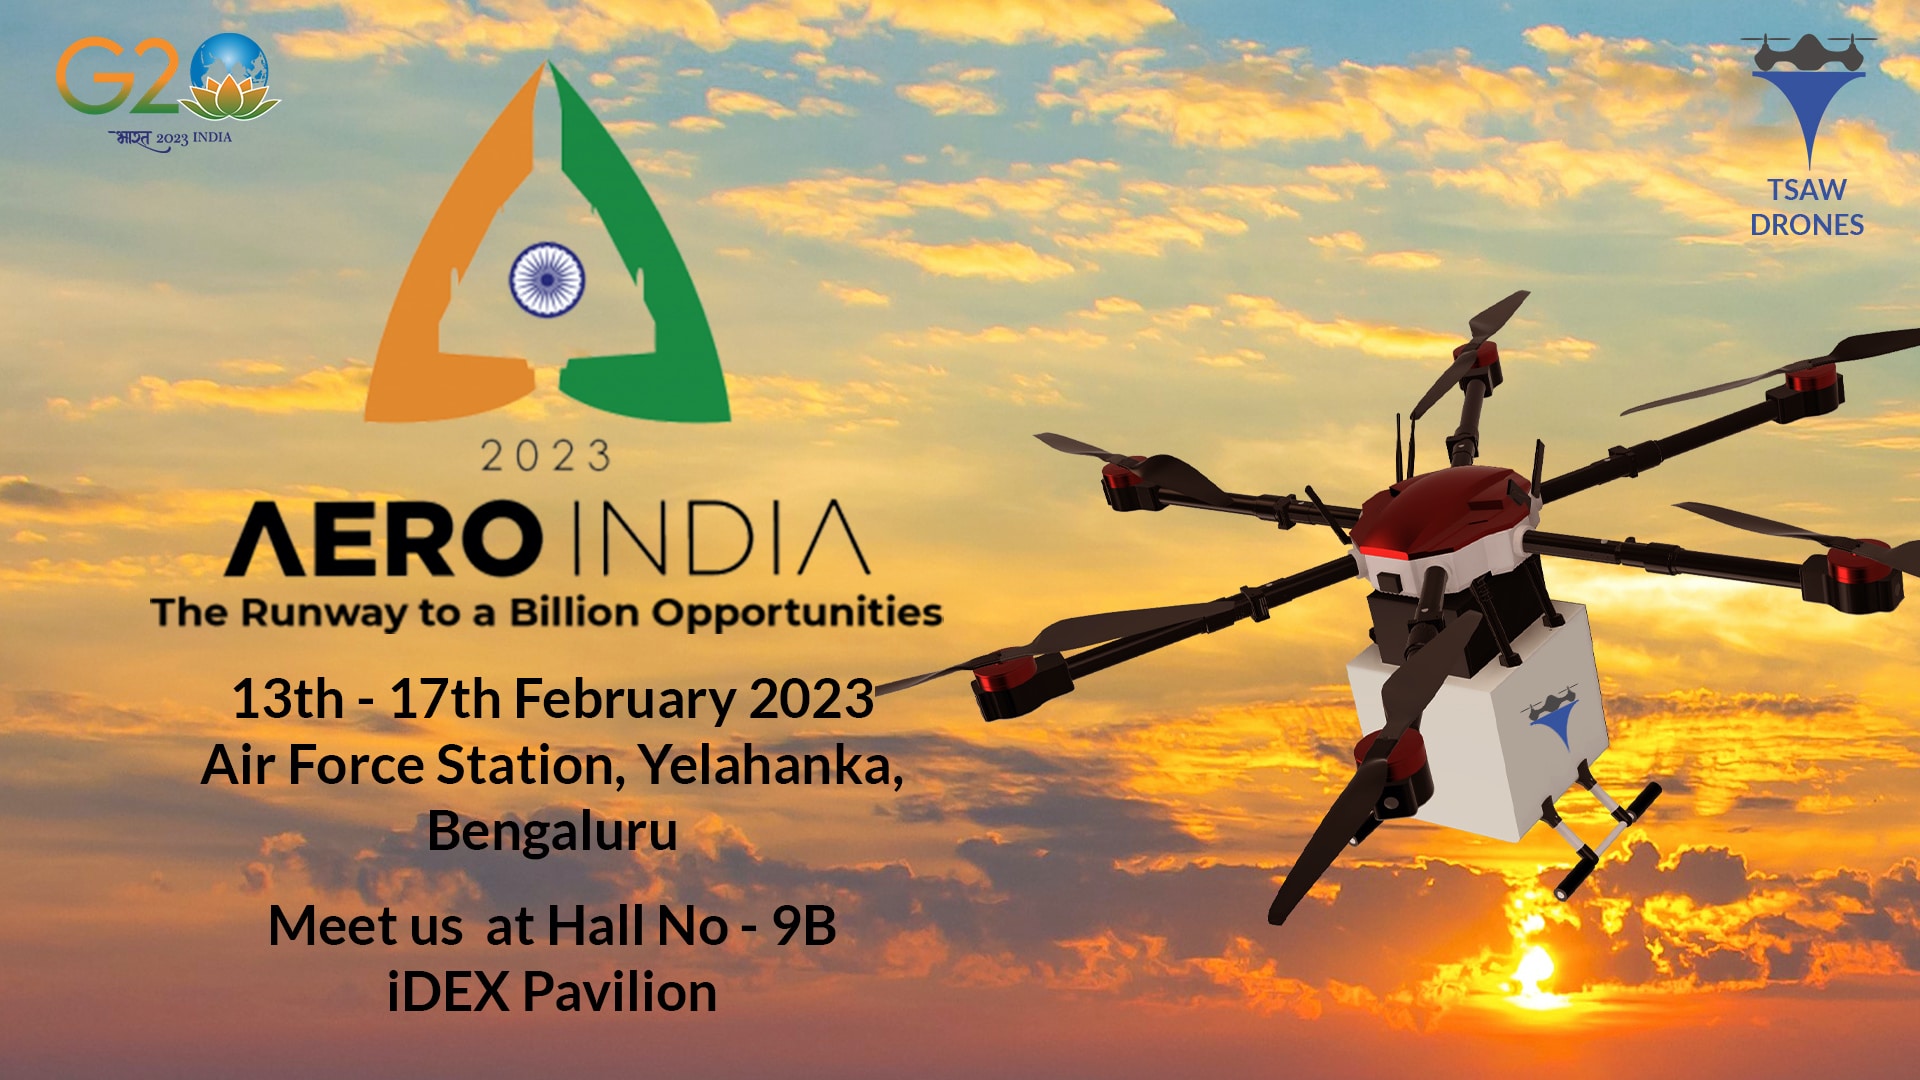 Drone Tech Startup TSAW will Participate in Aero India 2023